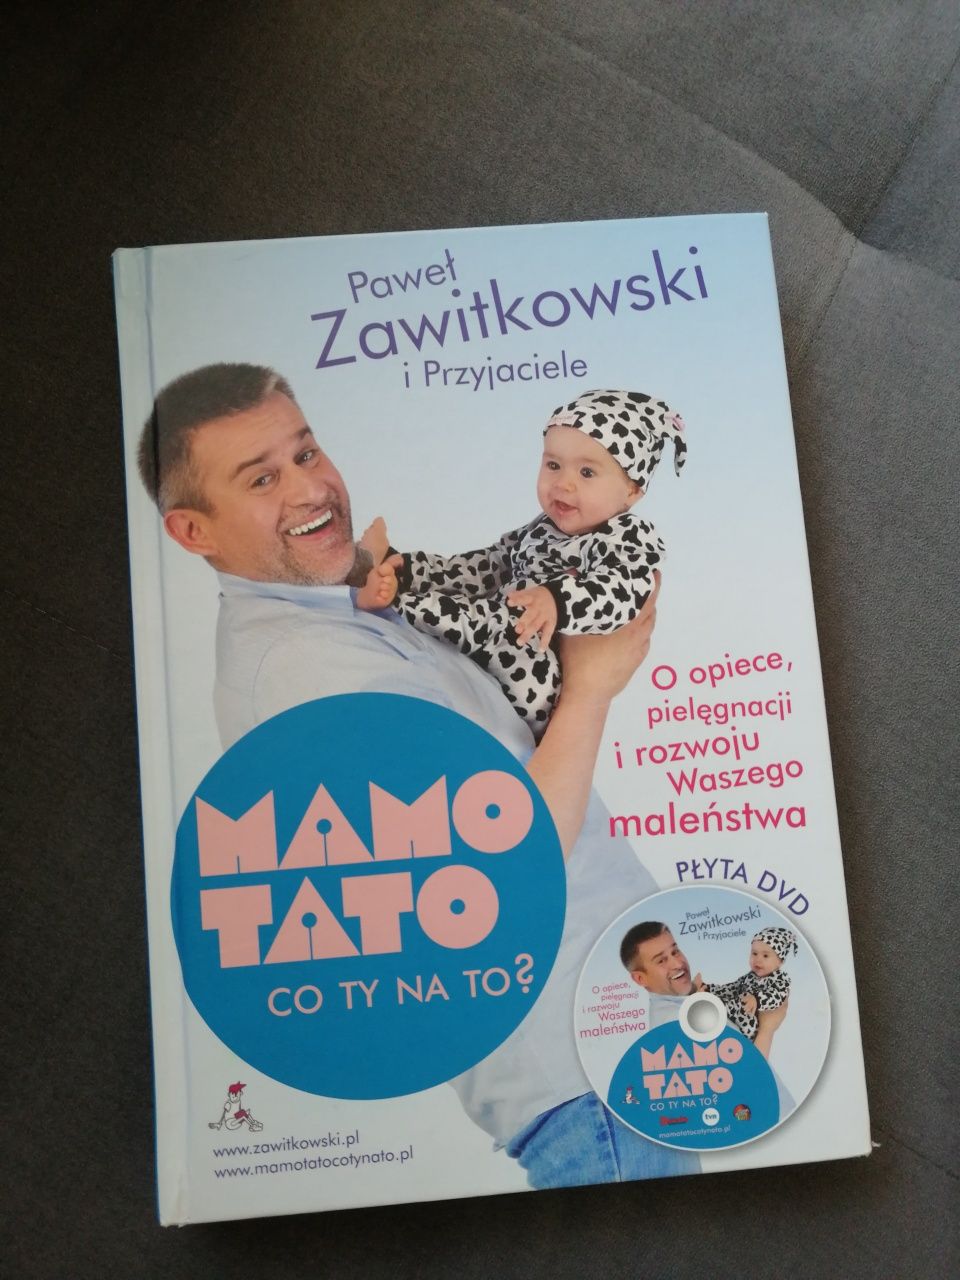 Książka "Mamo tato co ty na to?" Paweł Zawitkowski